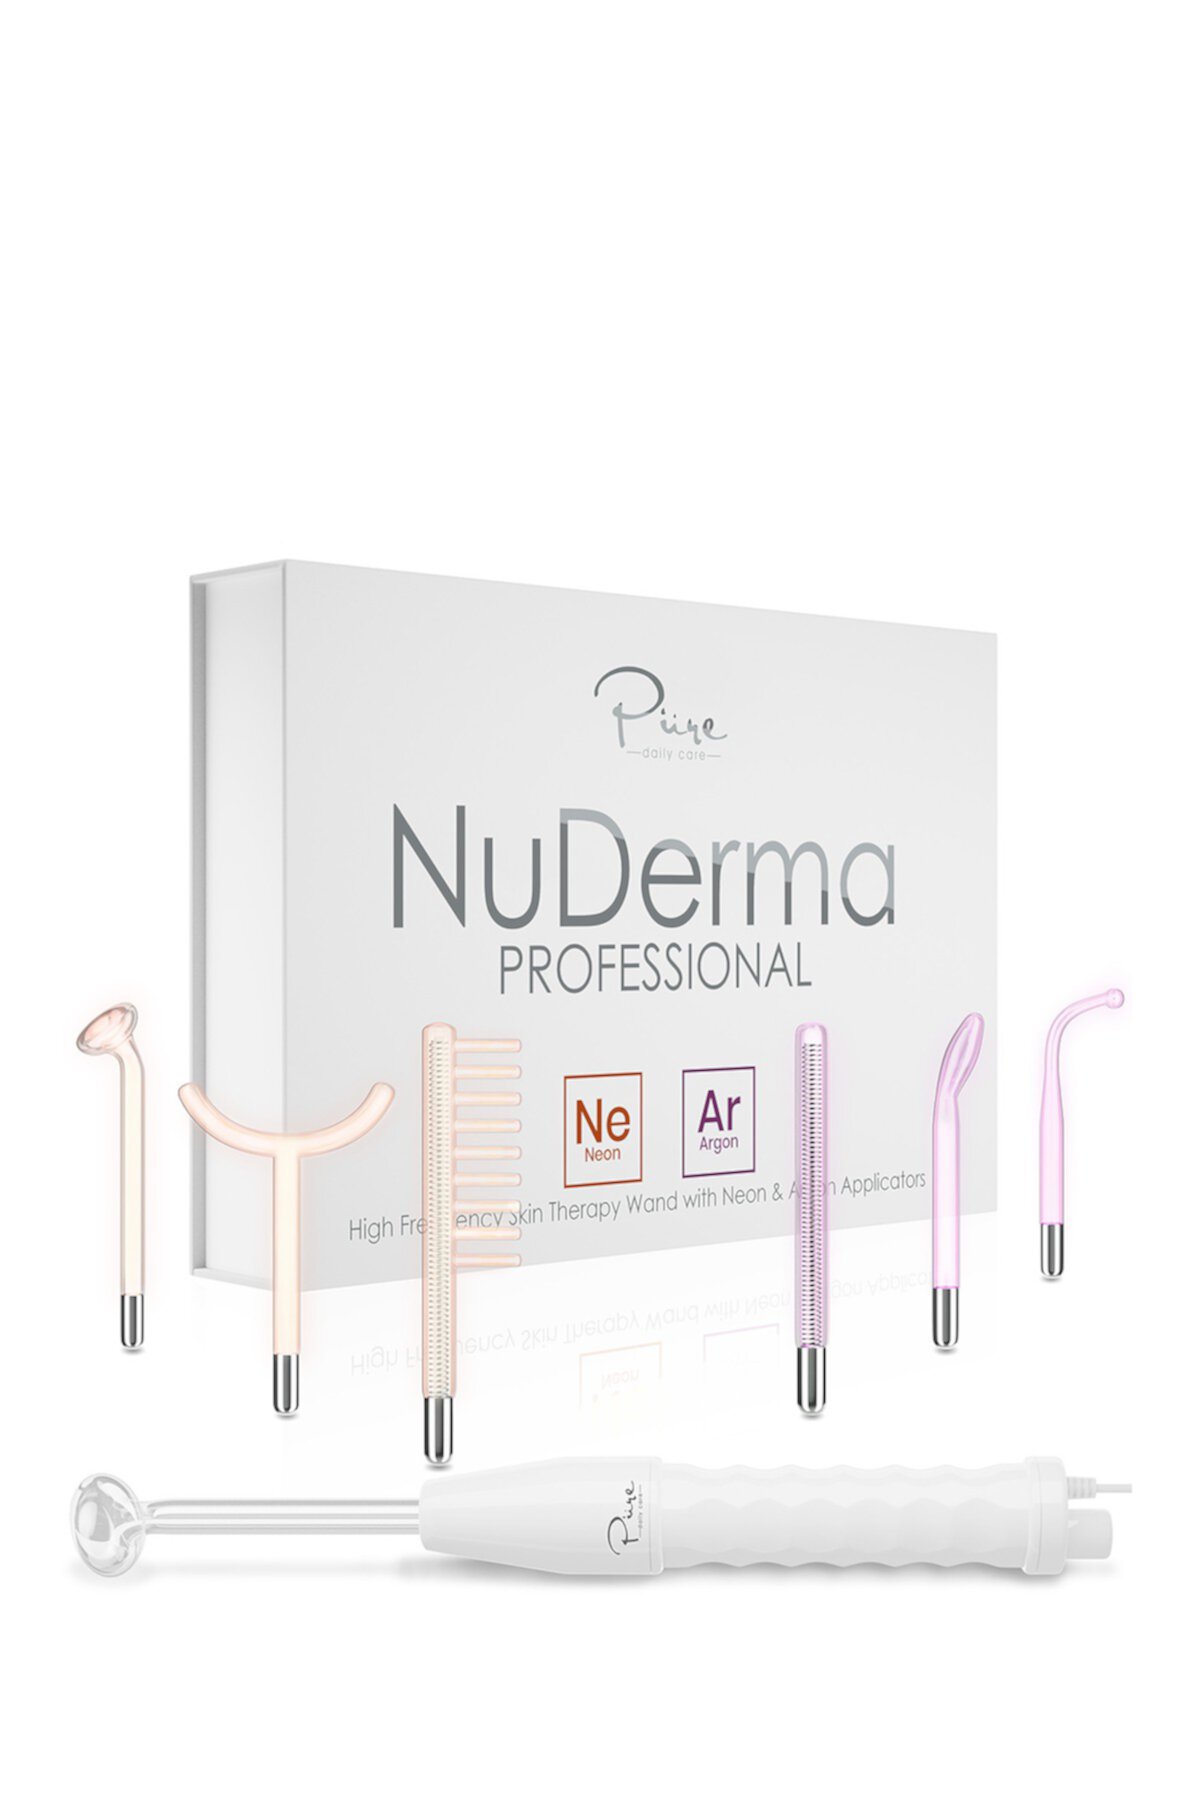 Pure Daily Care NuDerma Professional Skin Therapy Wand - портативный портативный высокочастотный аппарат для терапии кожи с 6 неоновыми и аргоновыми жезлами PURE DAILY CARE